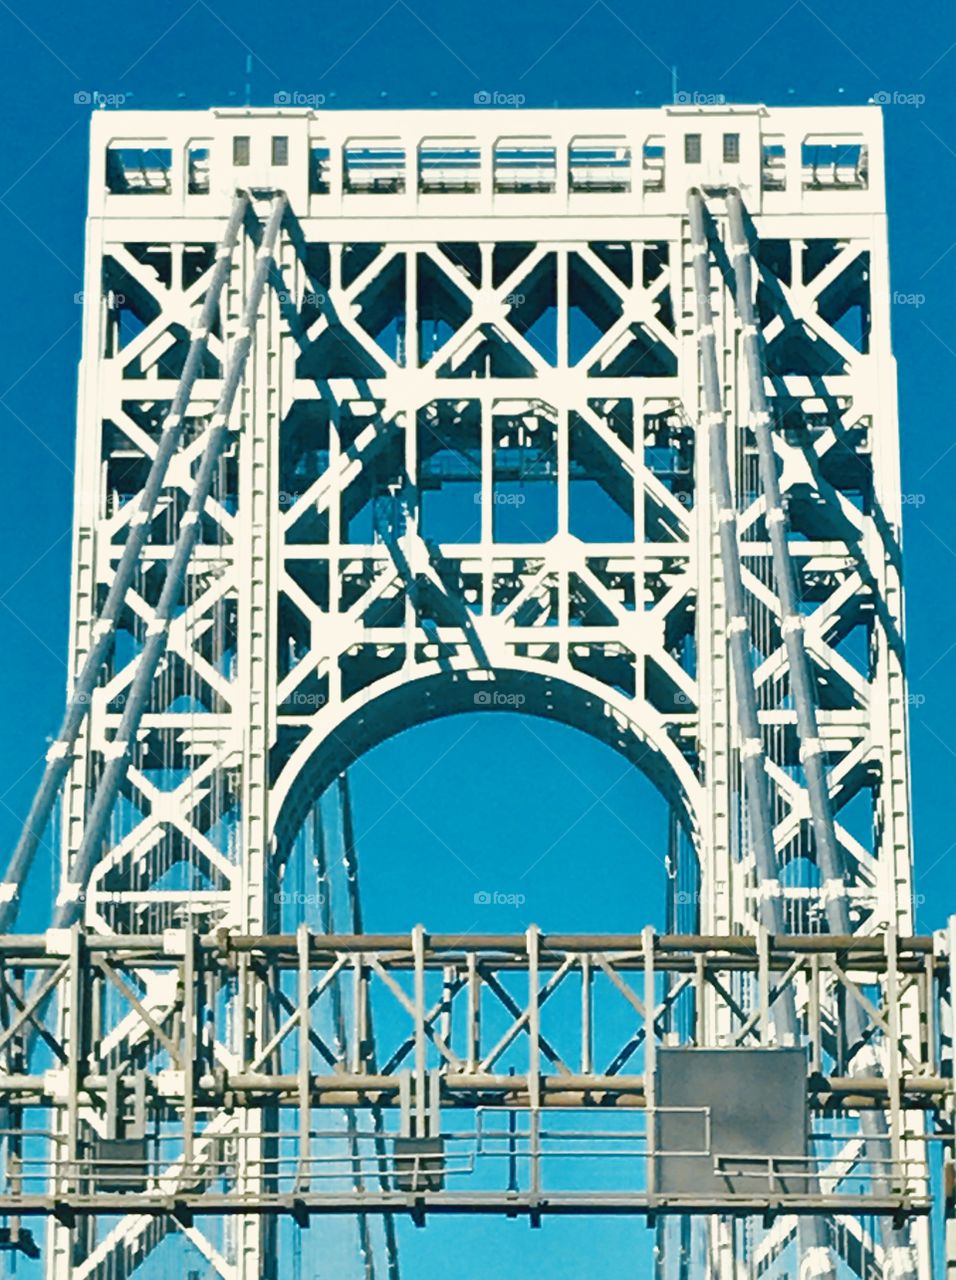 Symmetry in the bridge